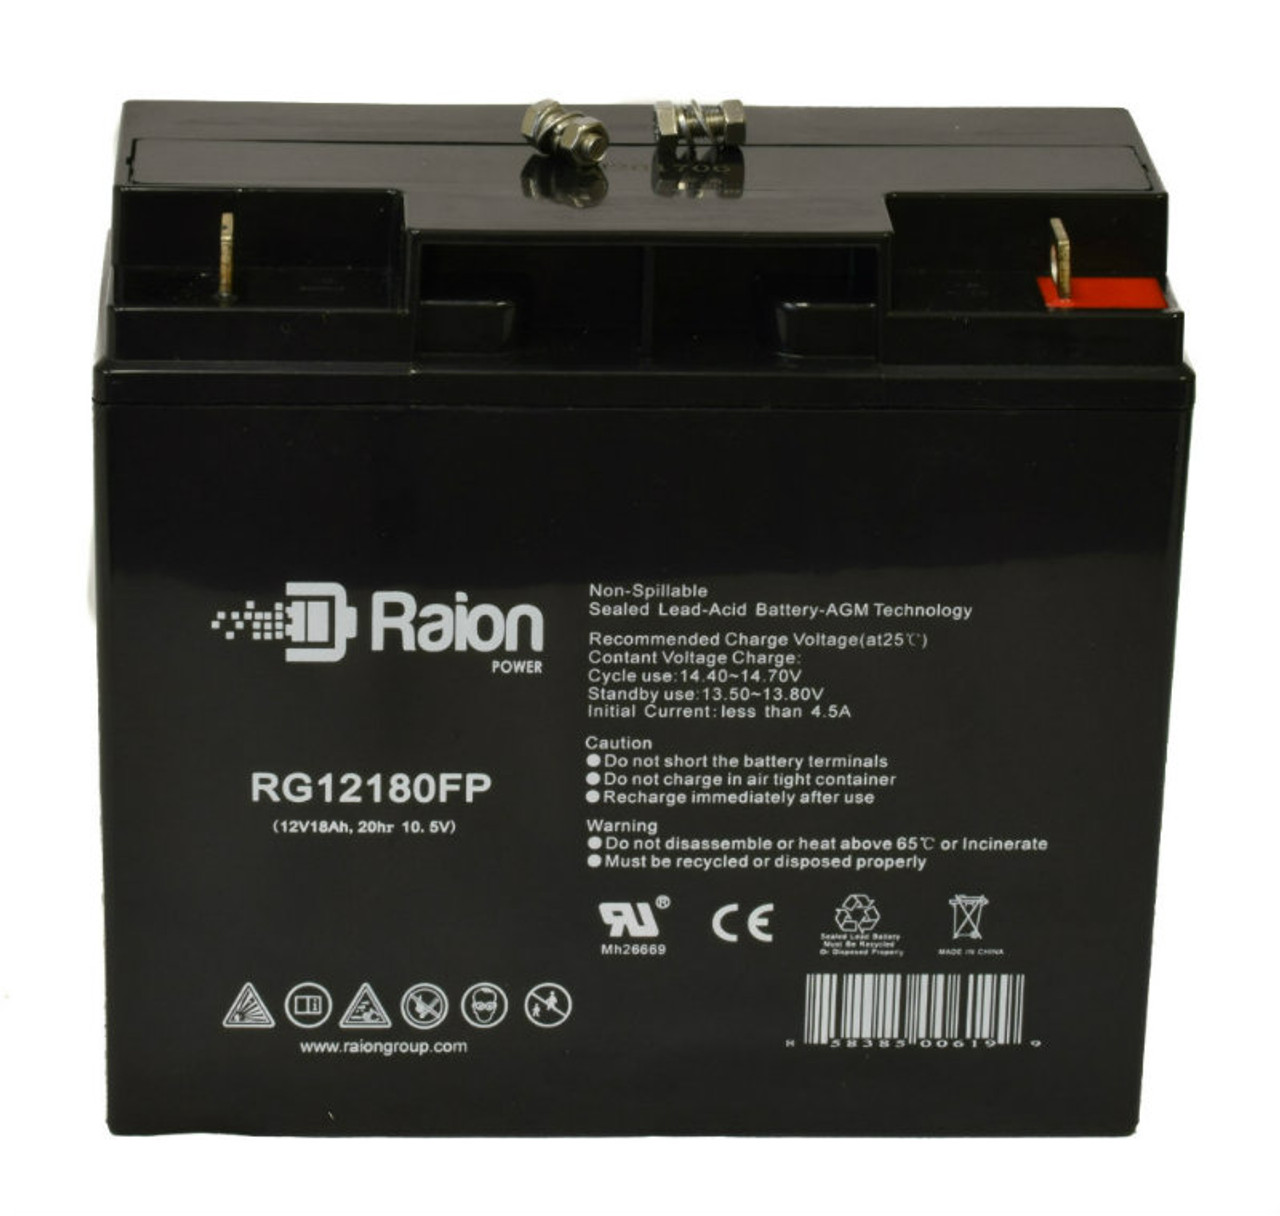 Raion Power RG12180FP 12V 18Ah Lead Acid Battery for NEATA NT12-20